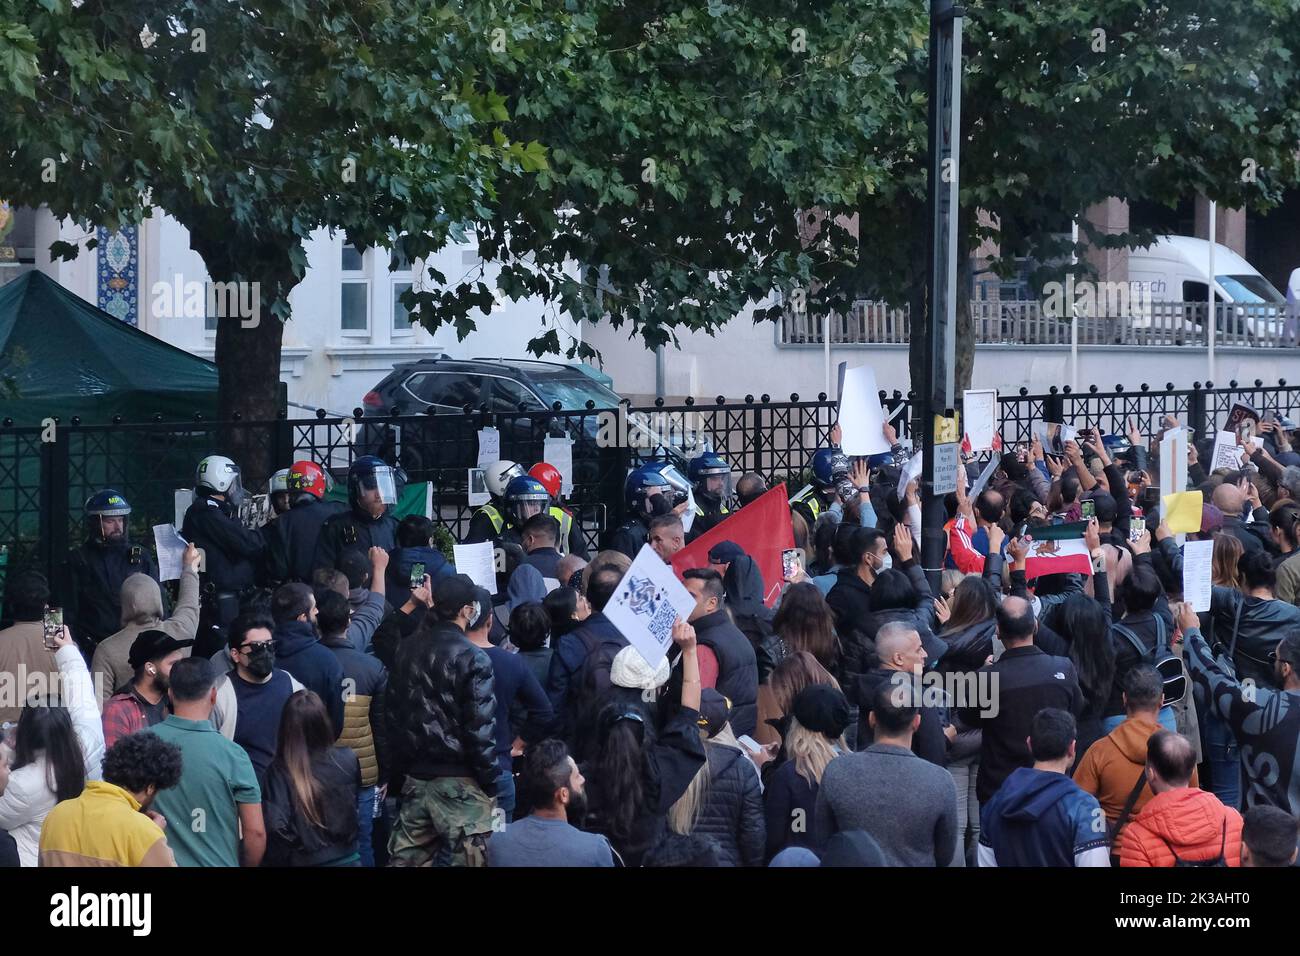 Londres, Reino Unido. 25th de septiembre de 2022. Cientos de iraníes-británicos continuaron su protesta después de que una mujer kurda de 22 años Mahsa Amini detenida por la policía de moralidad de la nación por usar su hijab incorrectamente, muriera bajo custodia. Una manifestación que comenzó fuera de la Embajada iraní se trasladó al Centro Islámico de Inglaterra, dirigido por el representante británico de Ayotollah Jamenei. La policía antidisturbios fue reclutada para dispersar a la multitud después de que estallara el desorden. Crédito: Fotografía de la undécima hora/Noticias vivas de Alamy Foto de stock